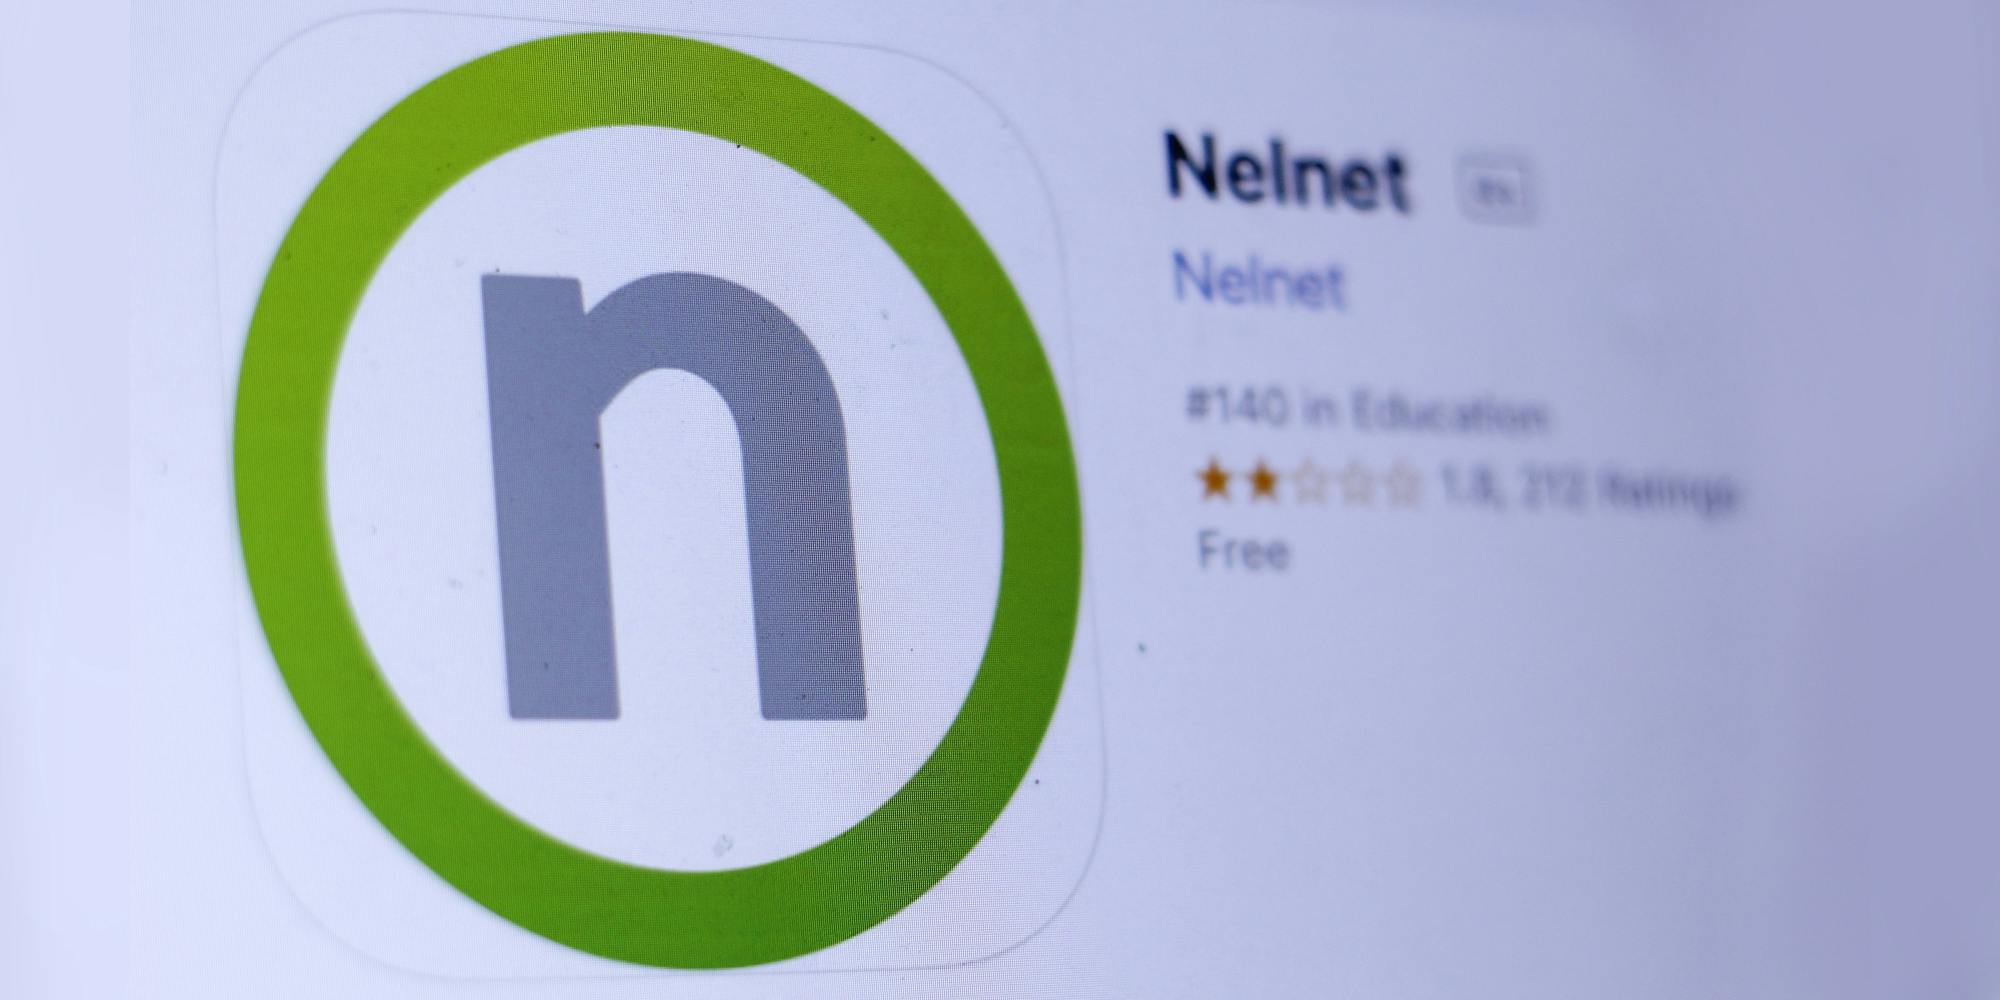 Nelnet app "Nelnet" in appstore on screen